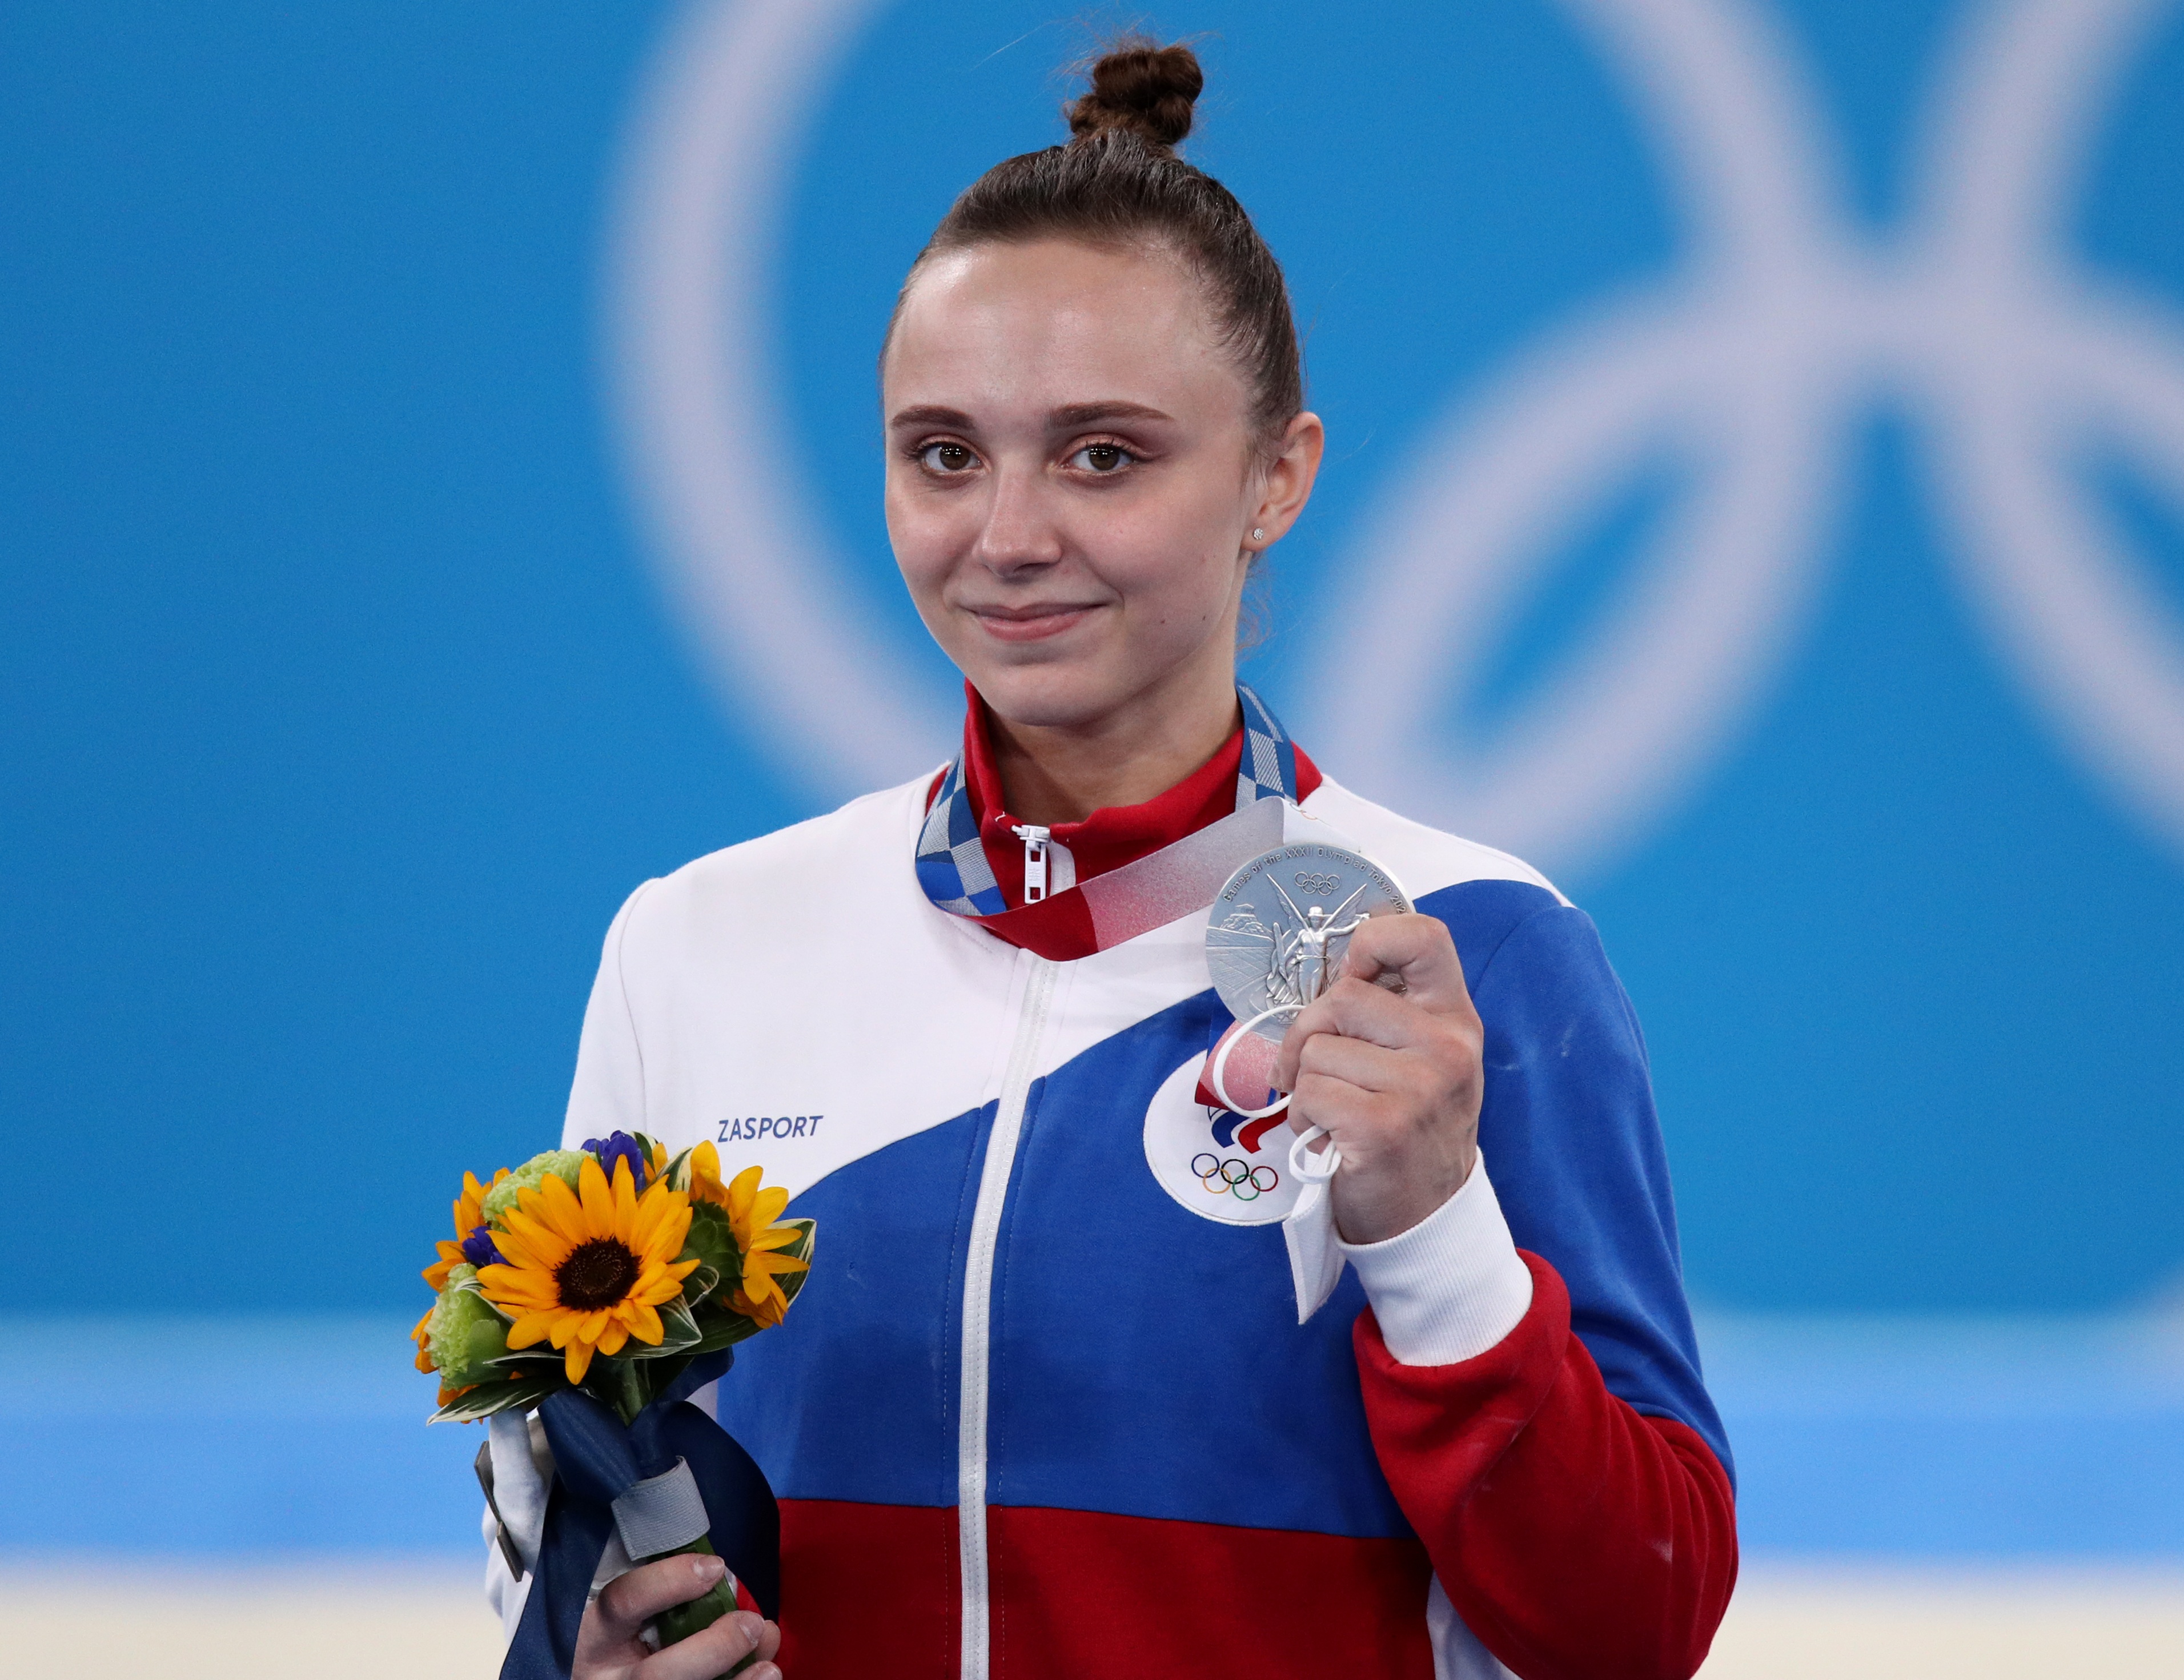 Анастасия Ильянкова заработала серебряную медаль в спортивной гимнастике. По итогам выступления на разновысоких брусьях она уступила только Нине Дервал из Бельгии